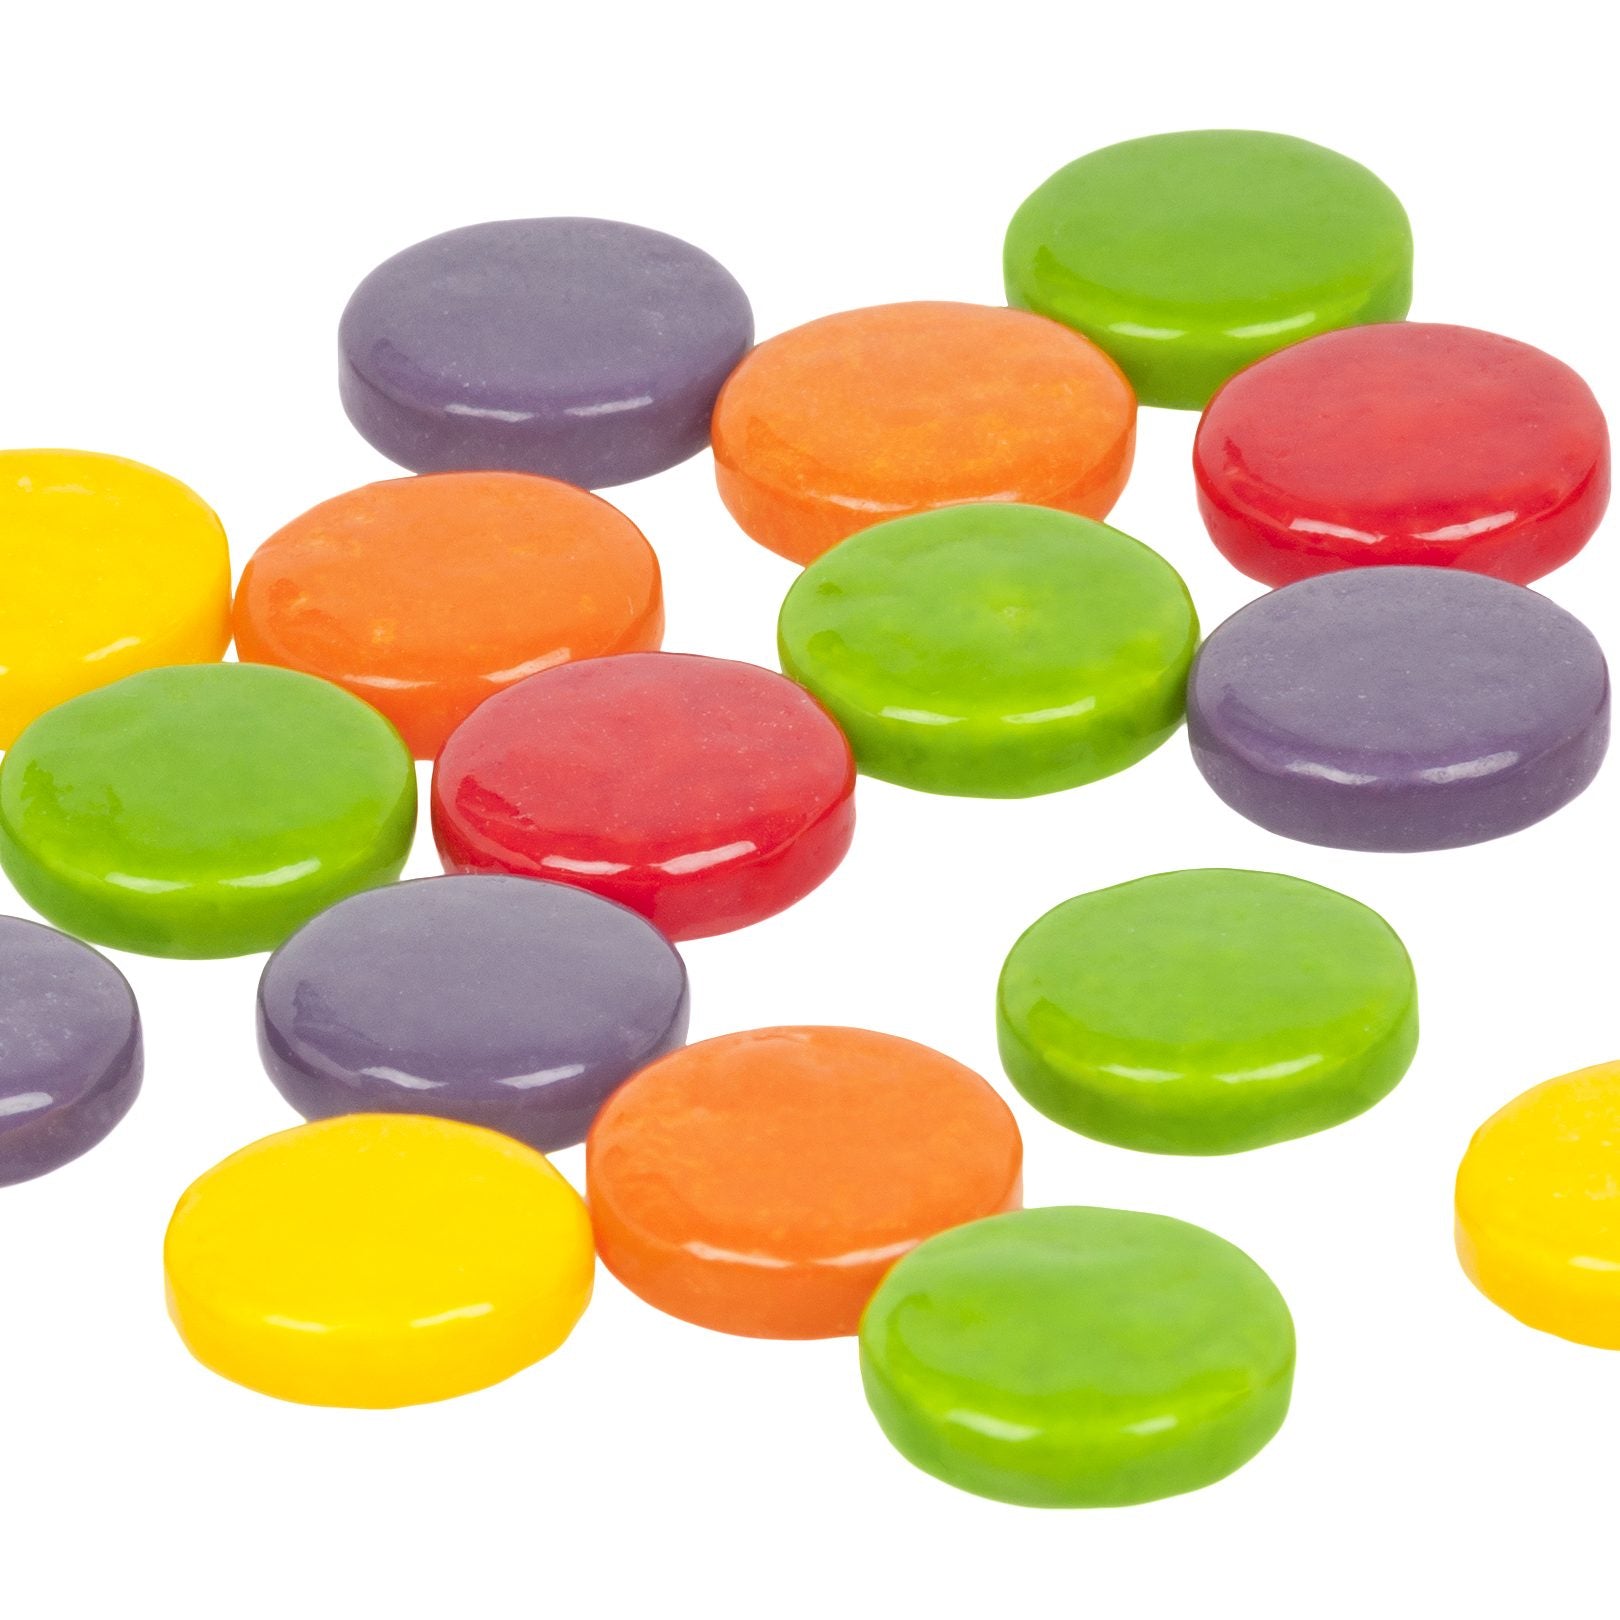 Plusieurs bonbons en forme de ronds aplatis jaune, rouge, vert, orange et mauve. Le tout sur un fond blanc